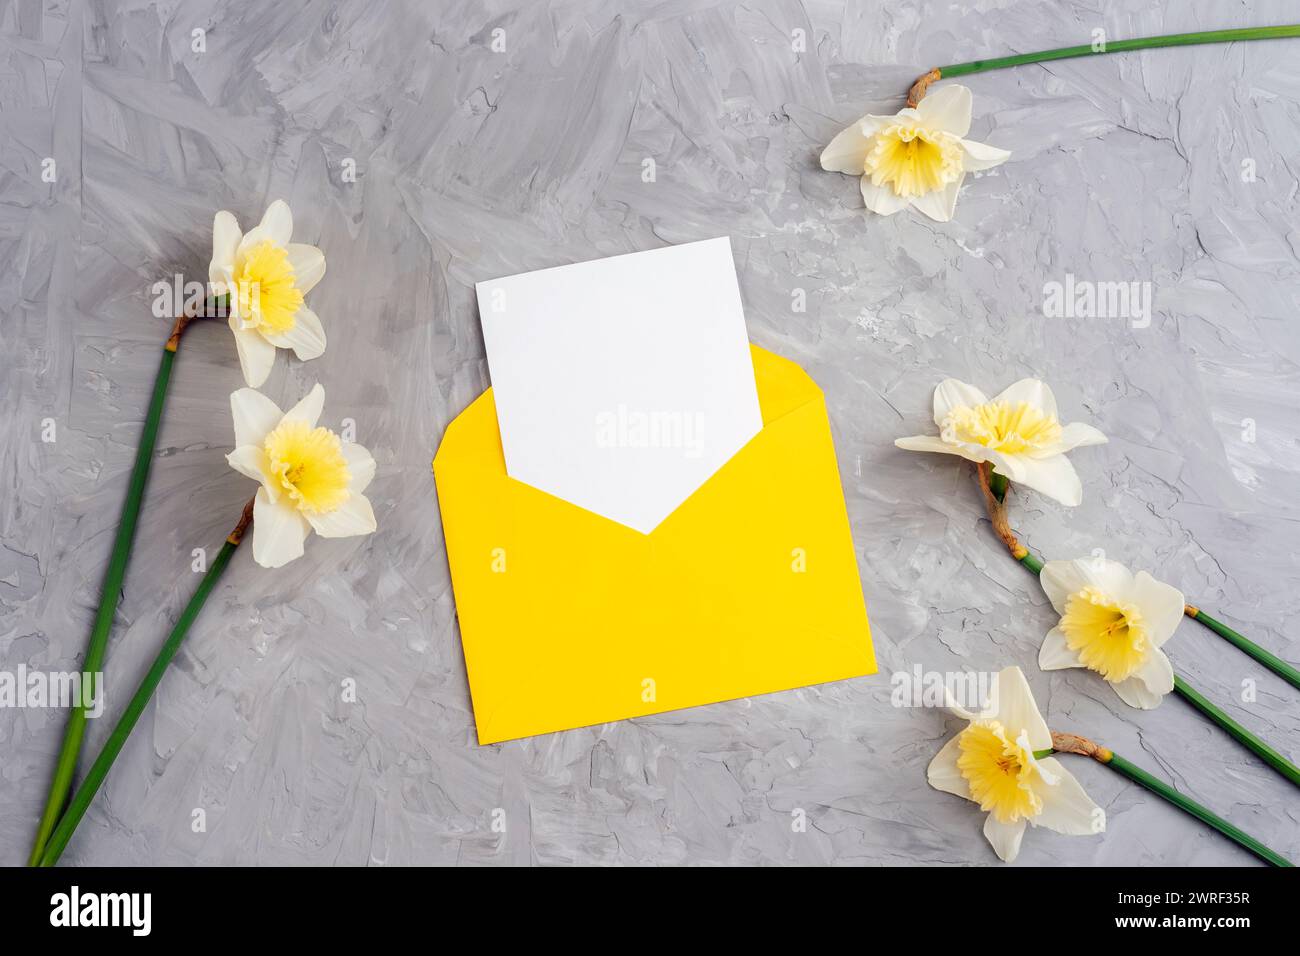 Gelber Umschlag mit leerer Karte und Narzissen Blumen auf strukturiertem grauen Hintergrund. Draufsicht, flach, Modell. Stockfoto